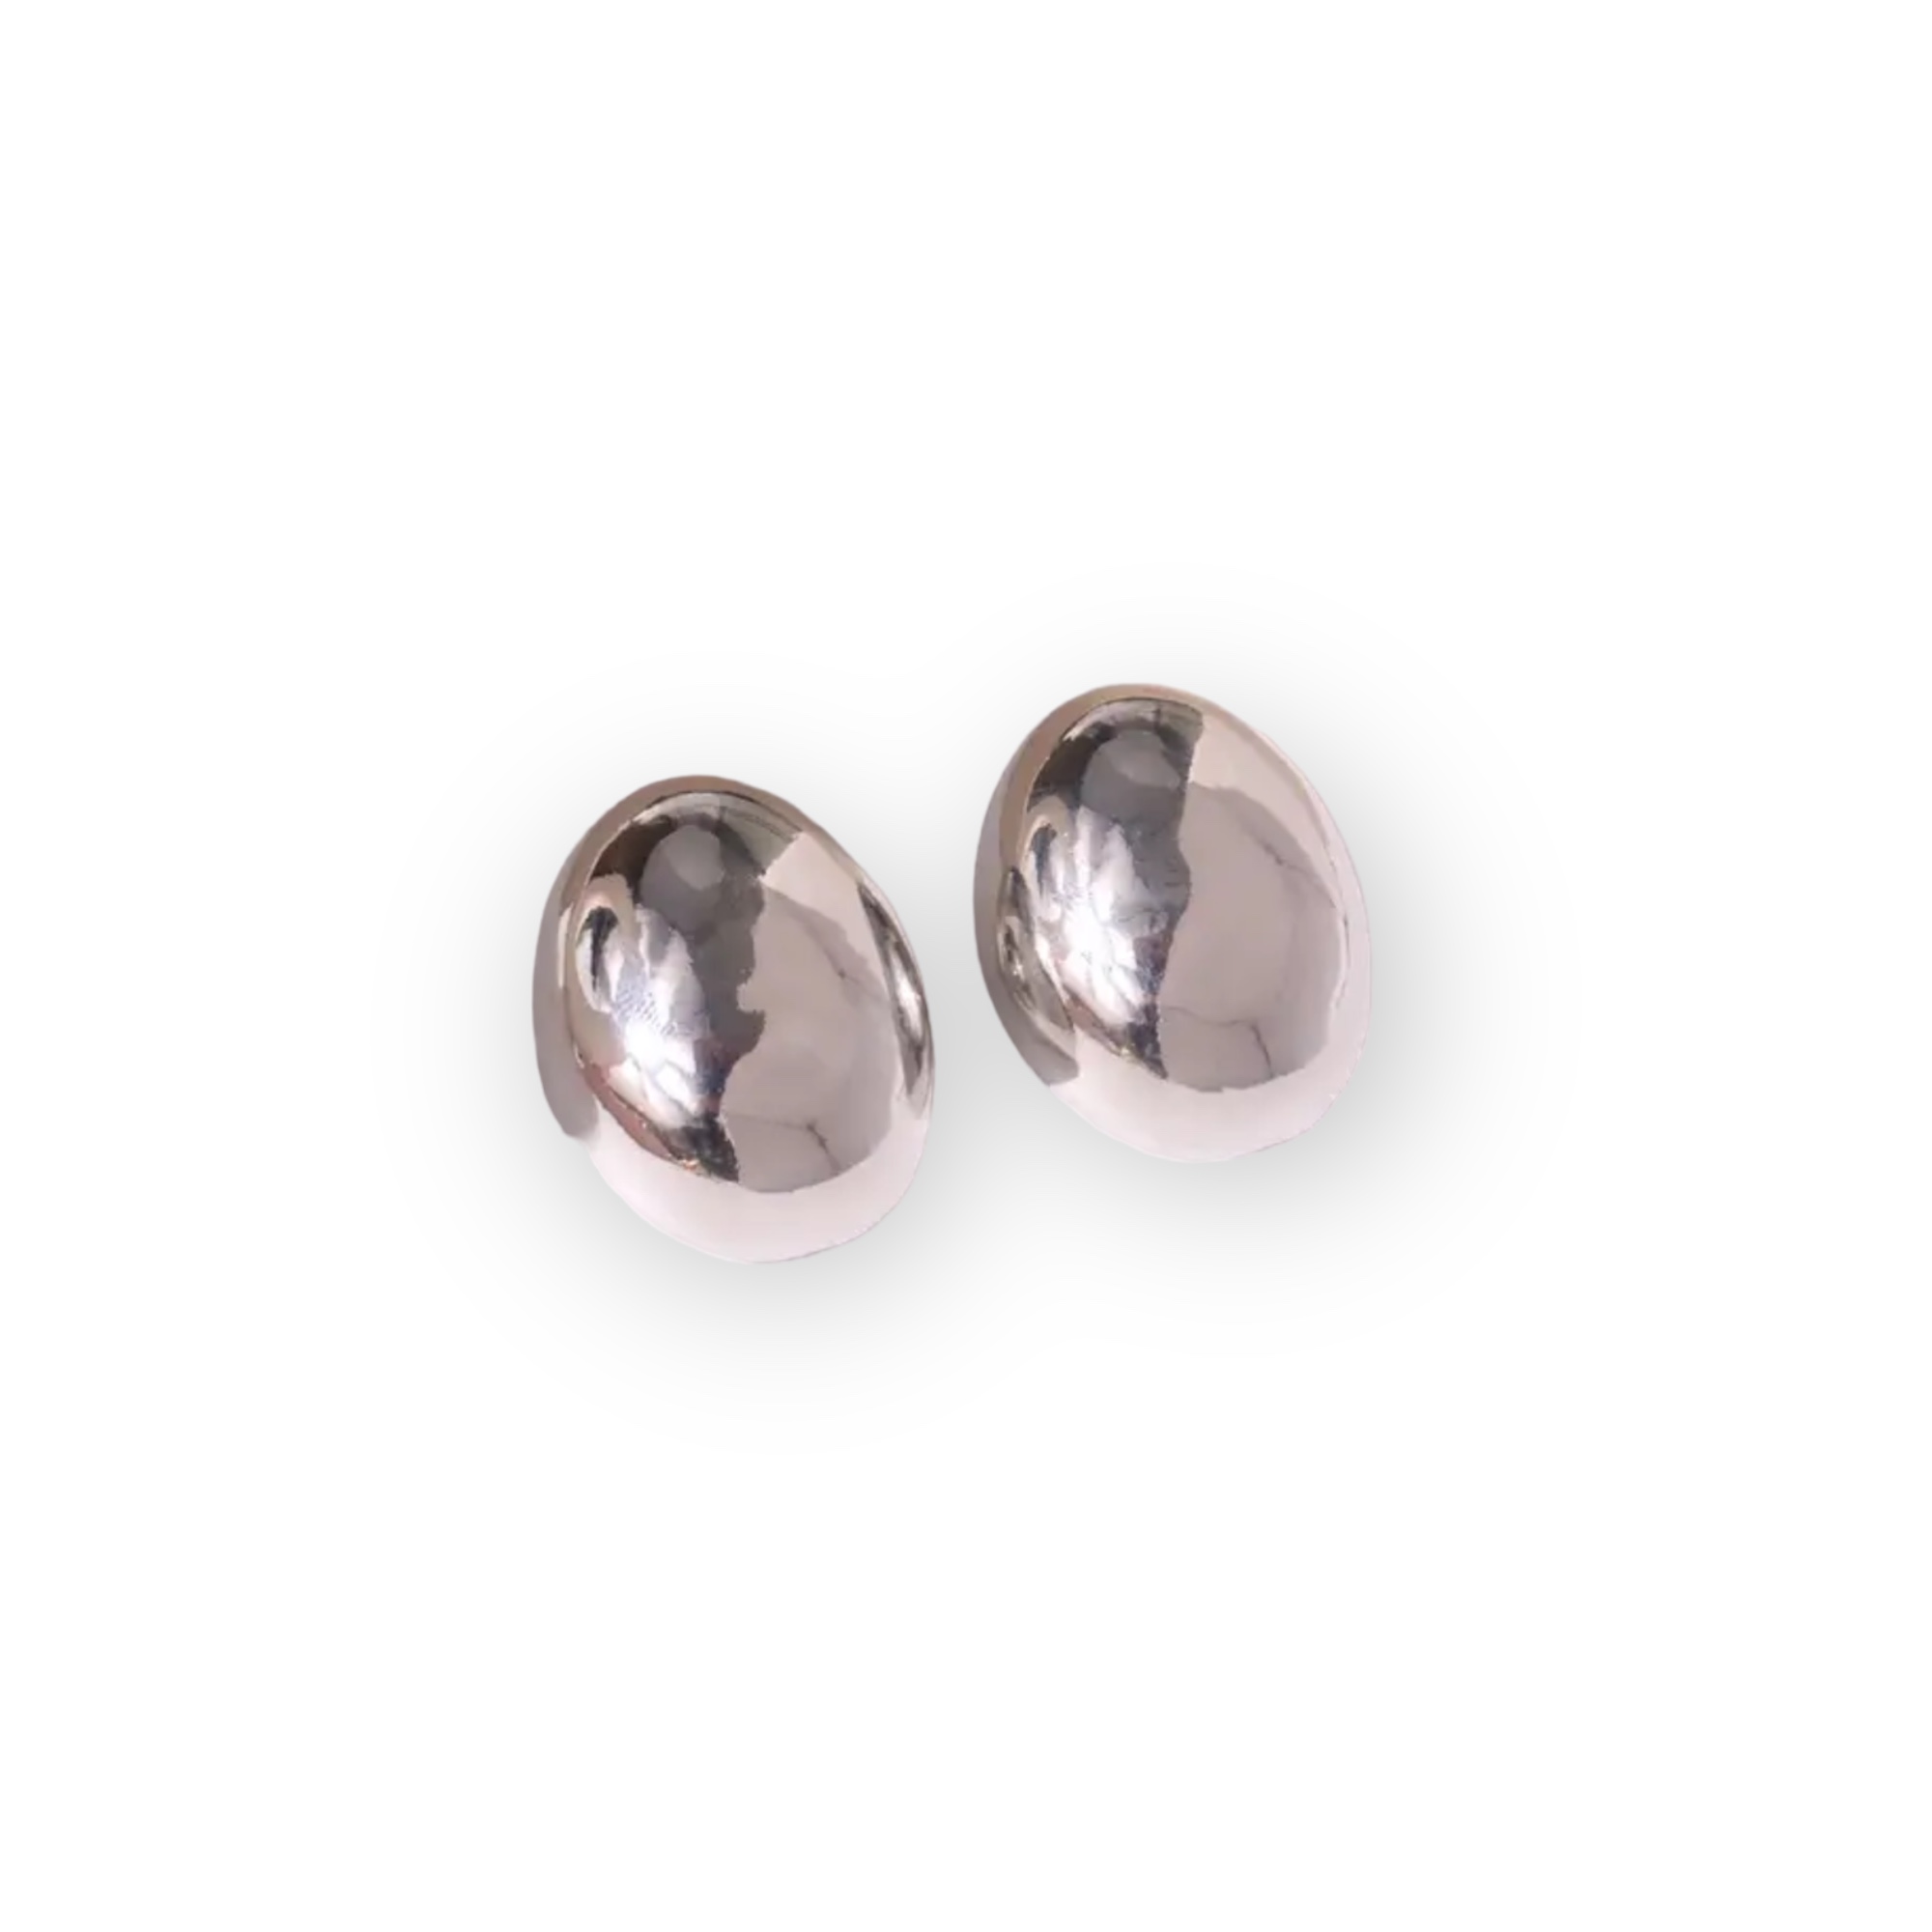 Aspen Earrings Silver